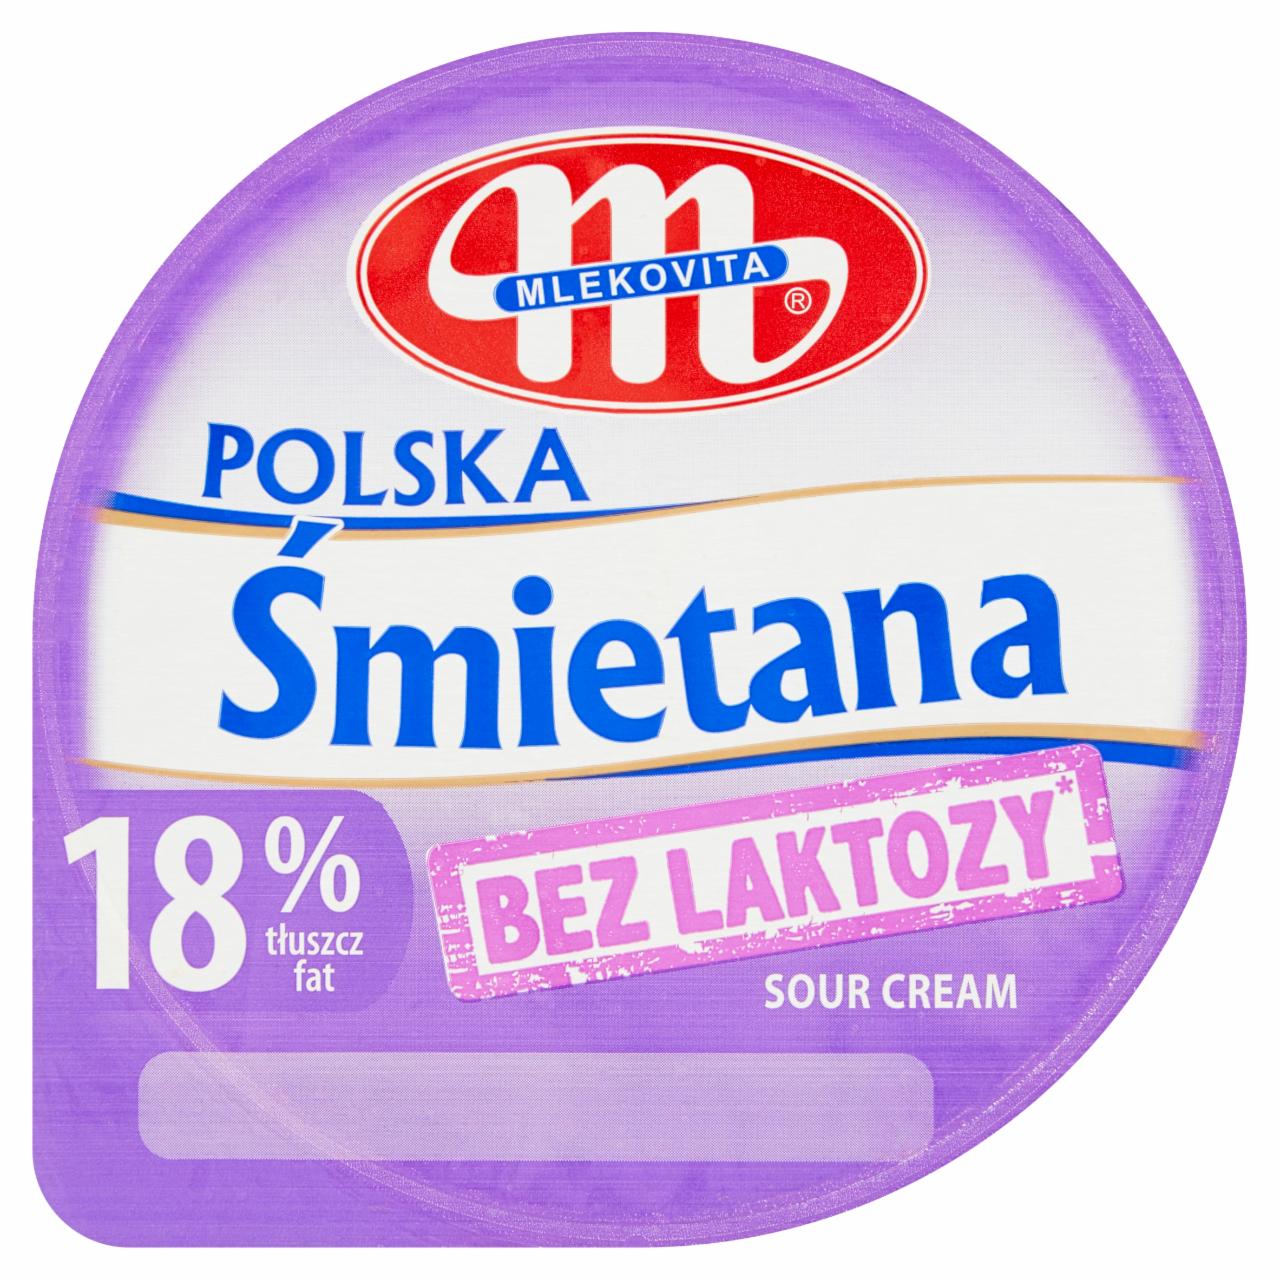 Zdjęcia - Mlekovita Śmietana Polska bez laktozy 18% 200 g